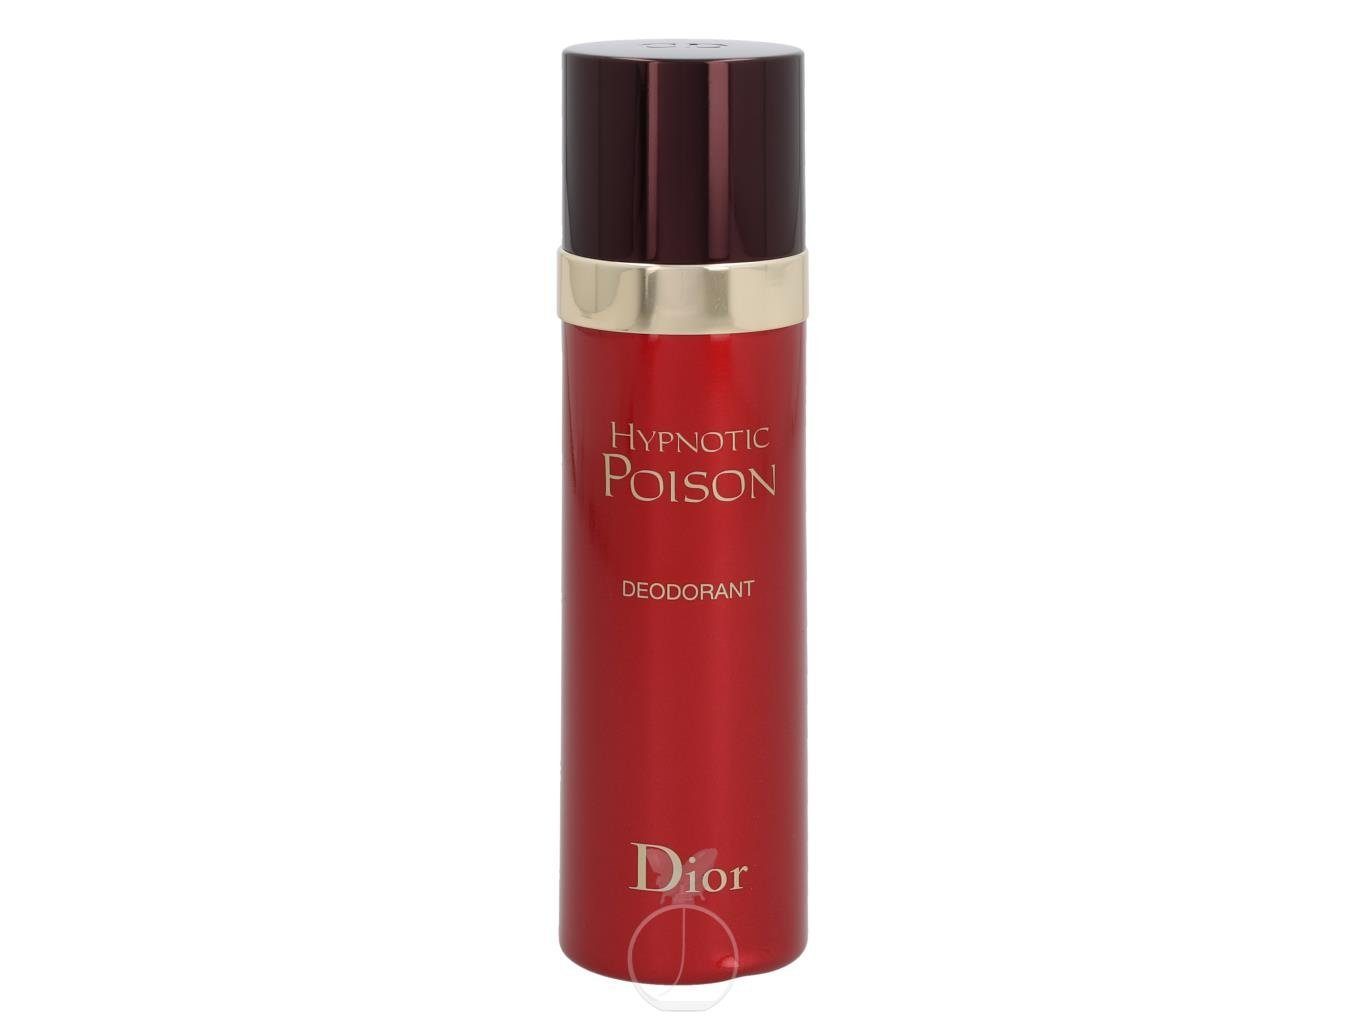 Dior Körperpflegeduft Dior Hypnotic Poison Deodorant 100 ml